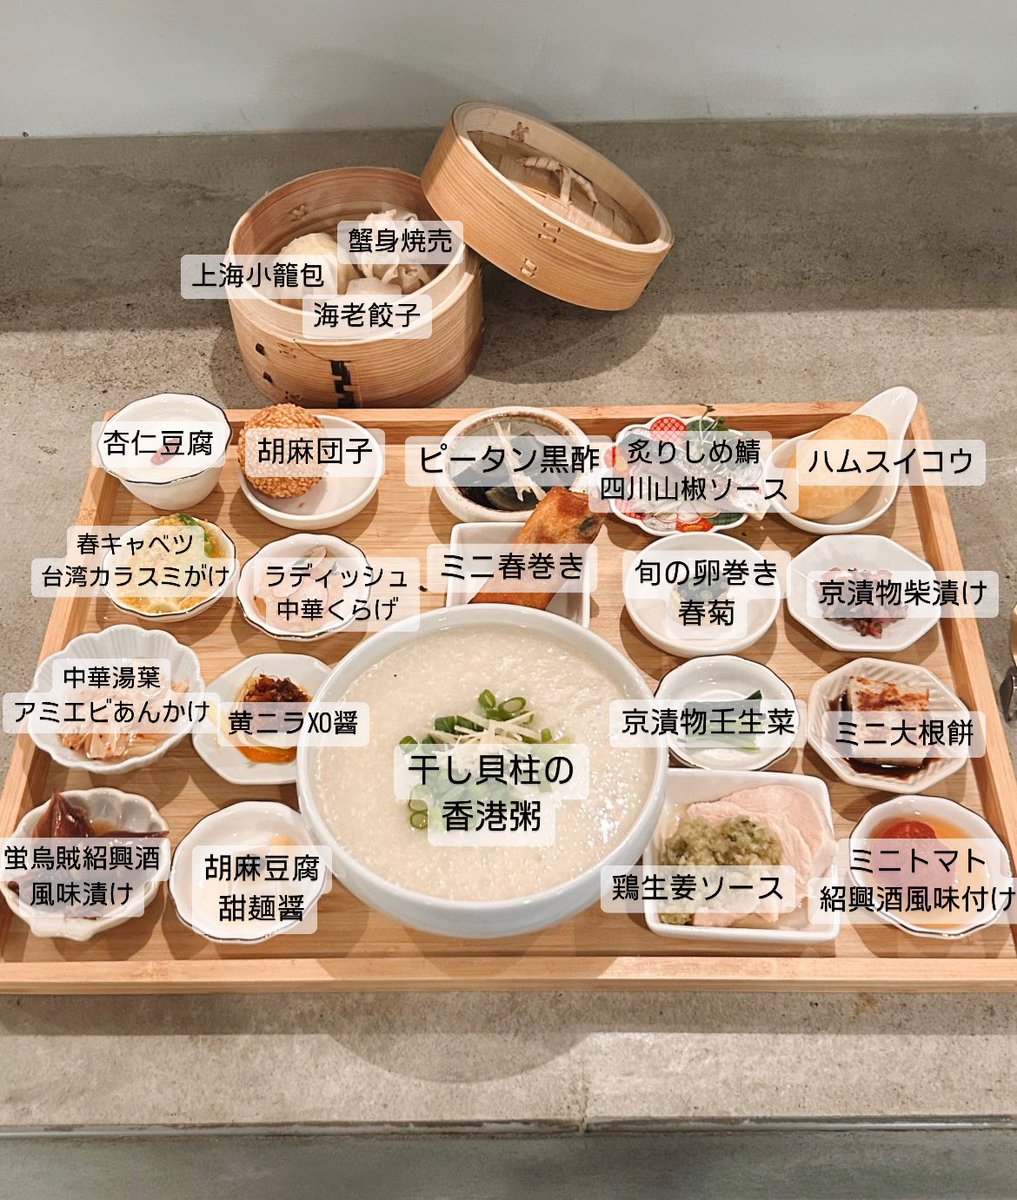 シャオシャオがモーニング始めたんだけど、本気の香港粥セット最高です🔥京都でおすすめのモーニング聞かれたらこれにしたい。シャオシャオの定番メニュー鶏生姜ソース(大好き)がついてるのも嬉しいし、お粥だから品数たくさんでもペロっと食べれちゃうよ